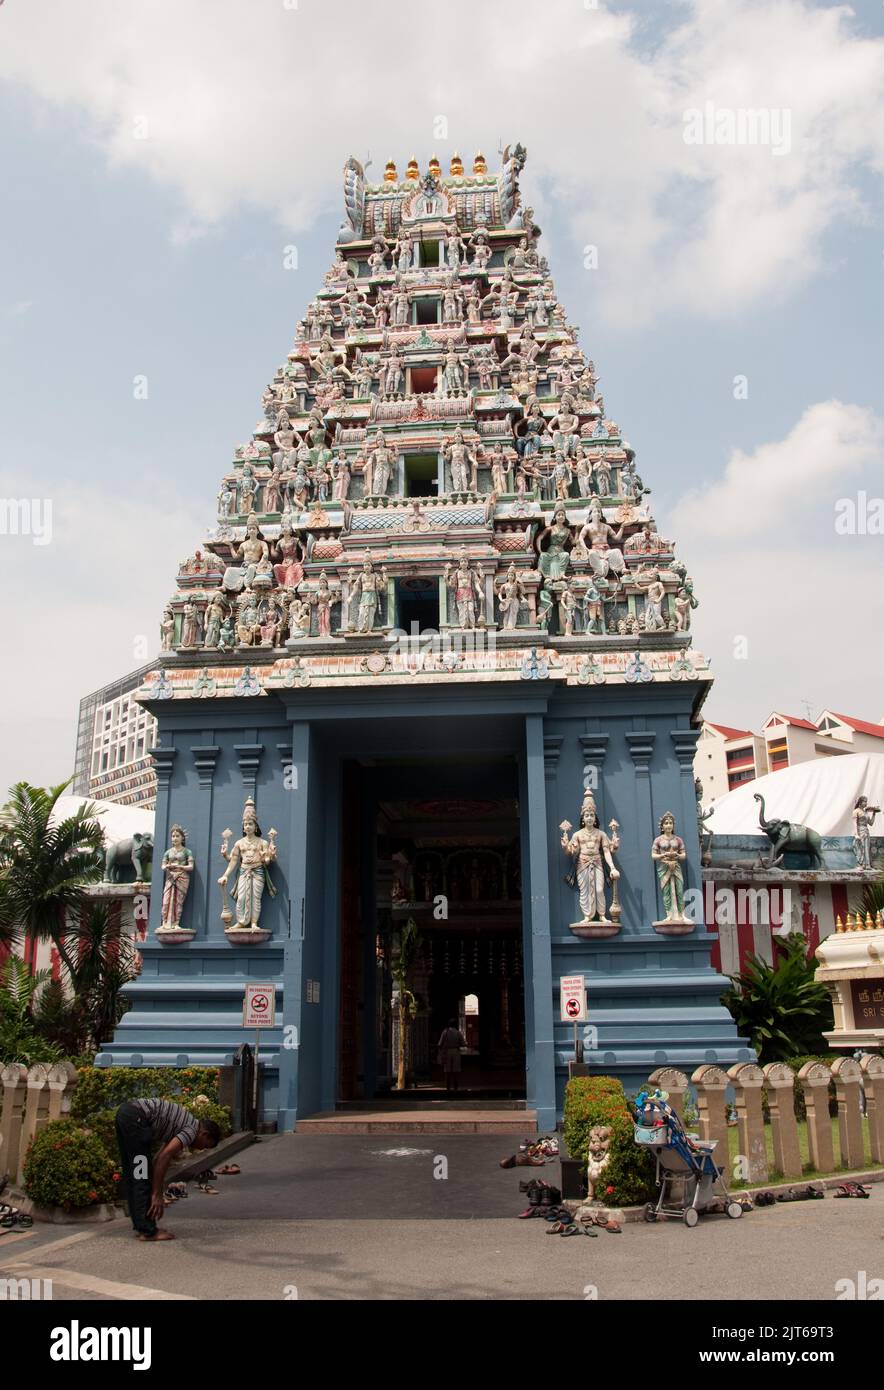 Sri Srinivasa Perumal Tempel, Little India, Singapur. Hindu-Tempel gewidmet Lord Perumal (auch bekannt als Lord Vishnu). Es zog die neu ar Stockfoto